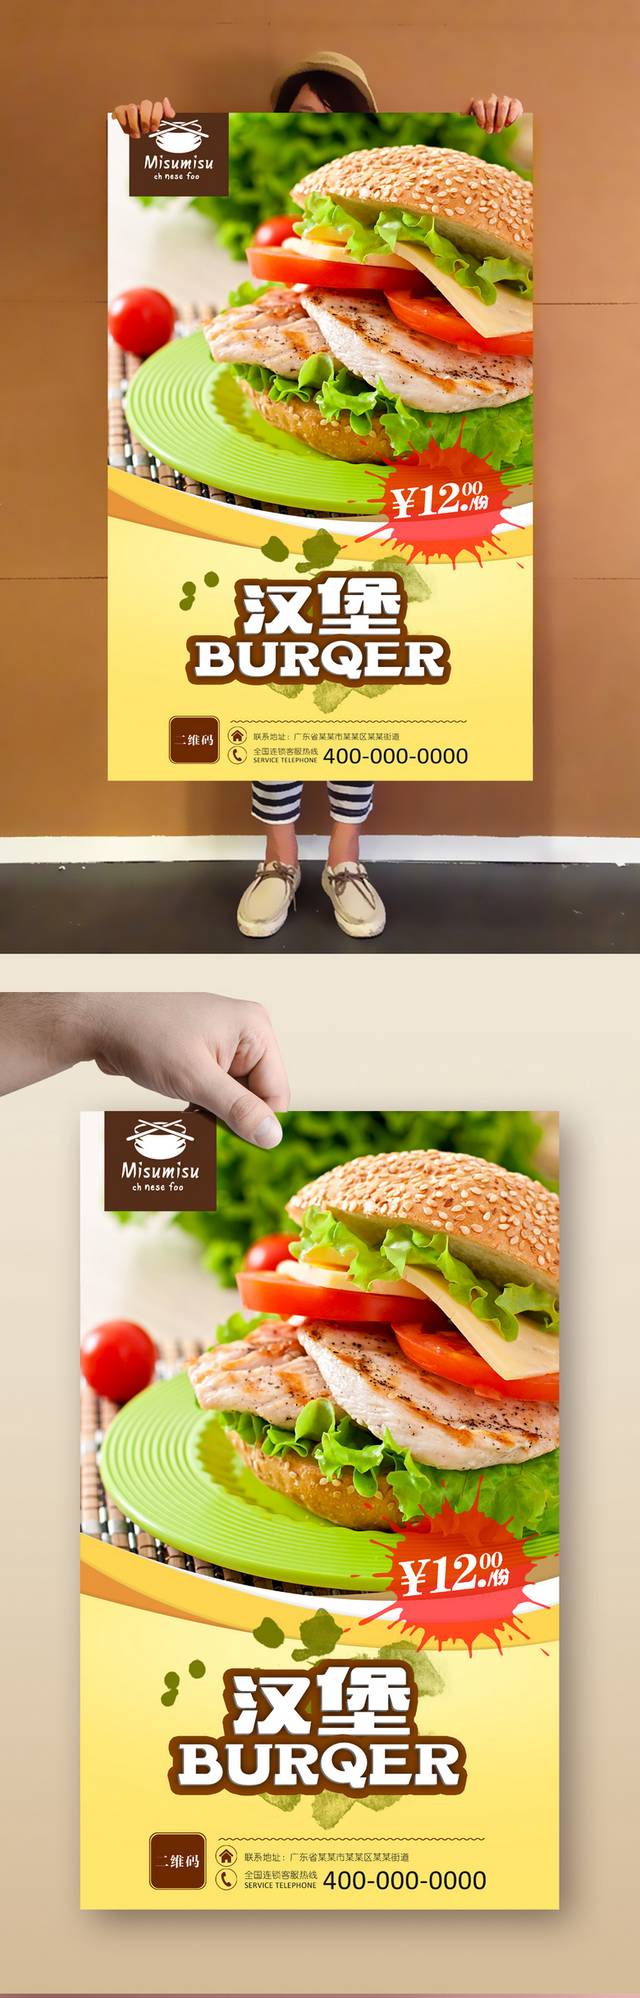 美味汉堡宣传海报设计psd模板